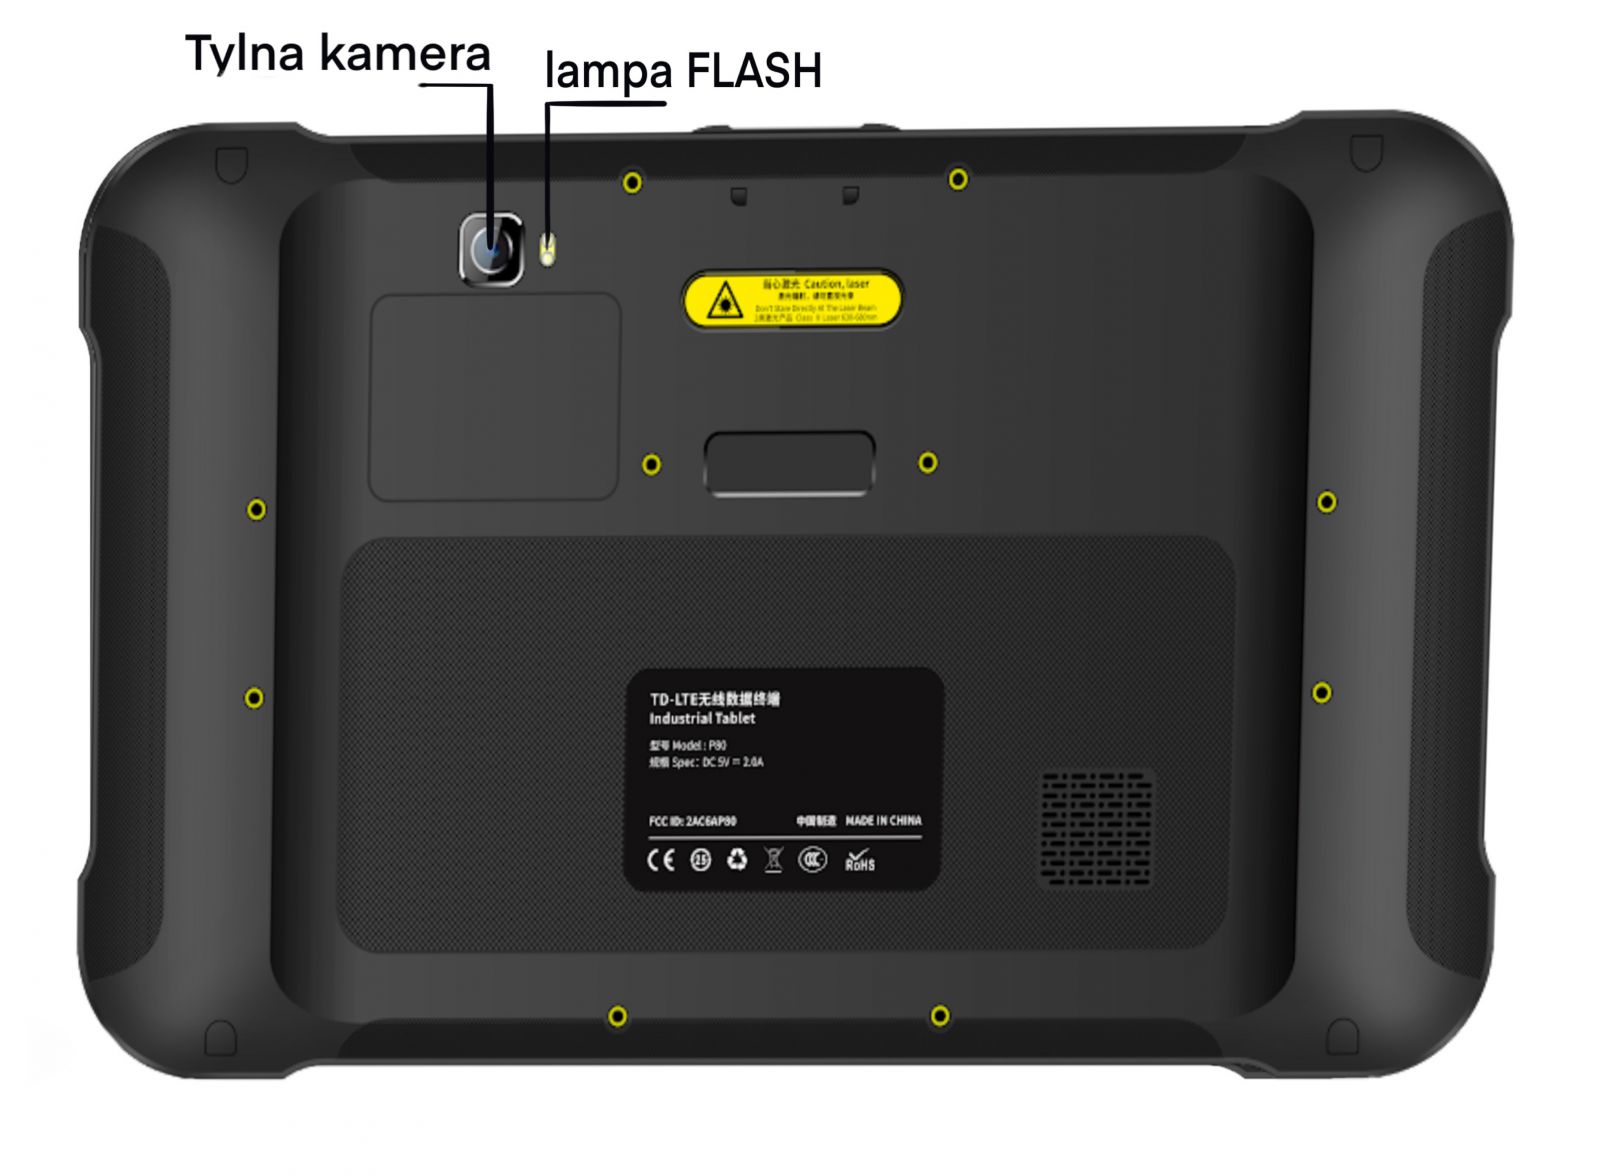  ty tableta przemysowego P80-PE v.2 wraz z kamer i lamp FLASH